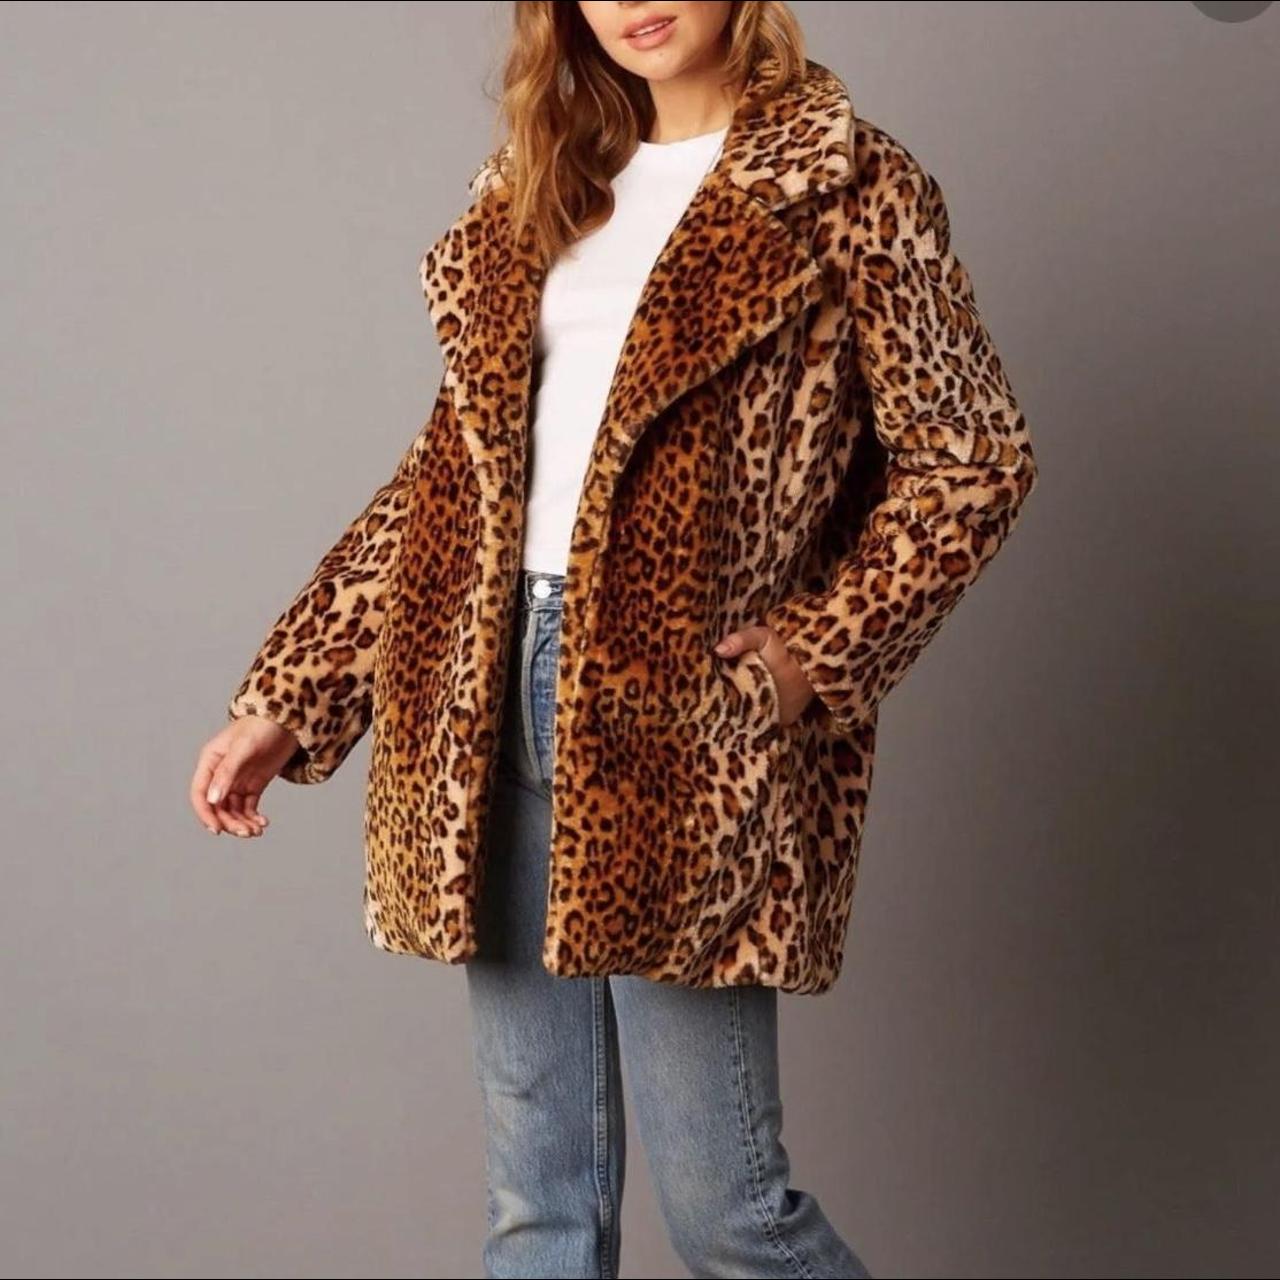 Anthropologie Women's Faux Fur Duster Jacket